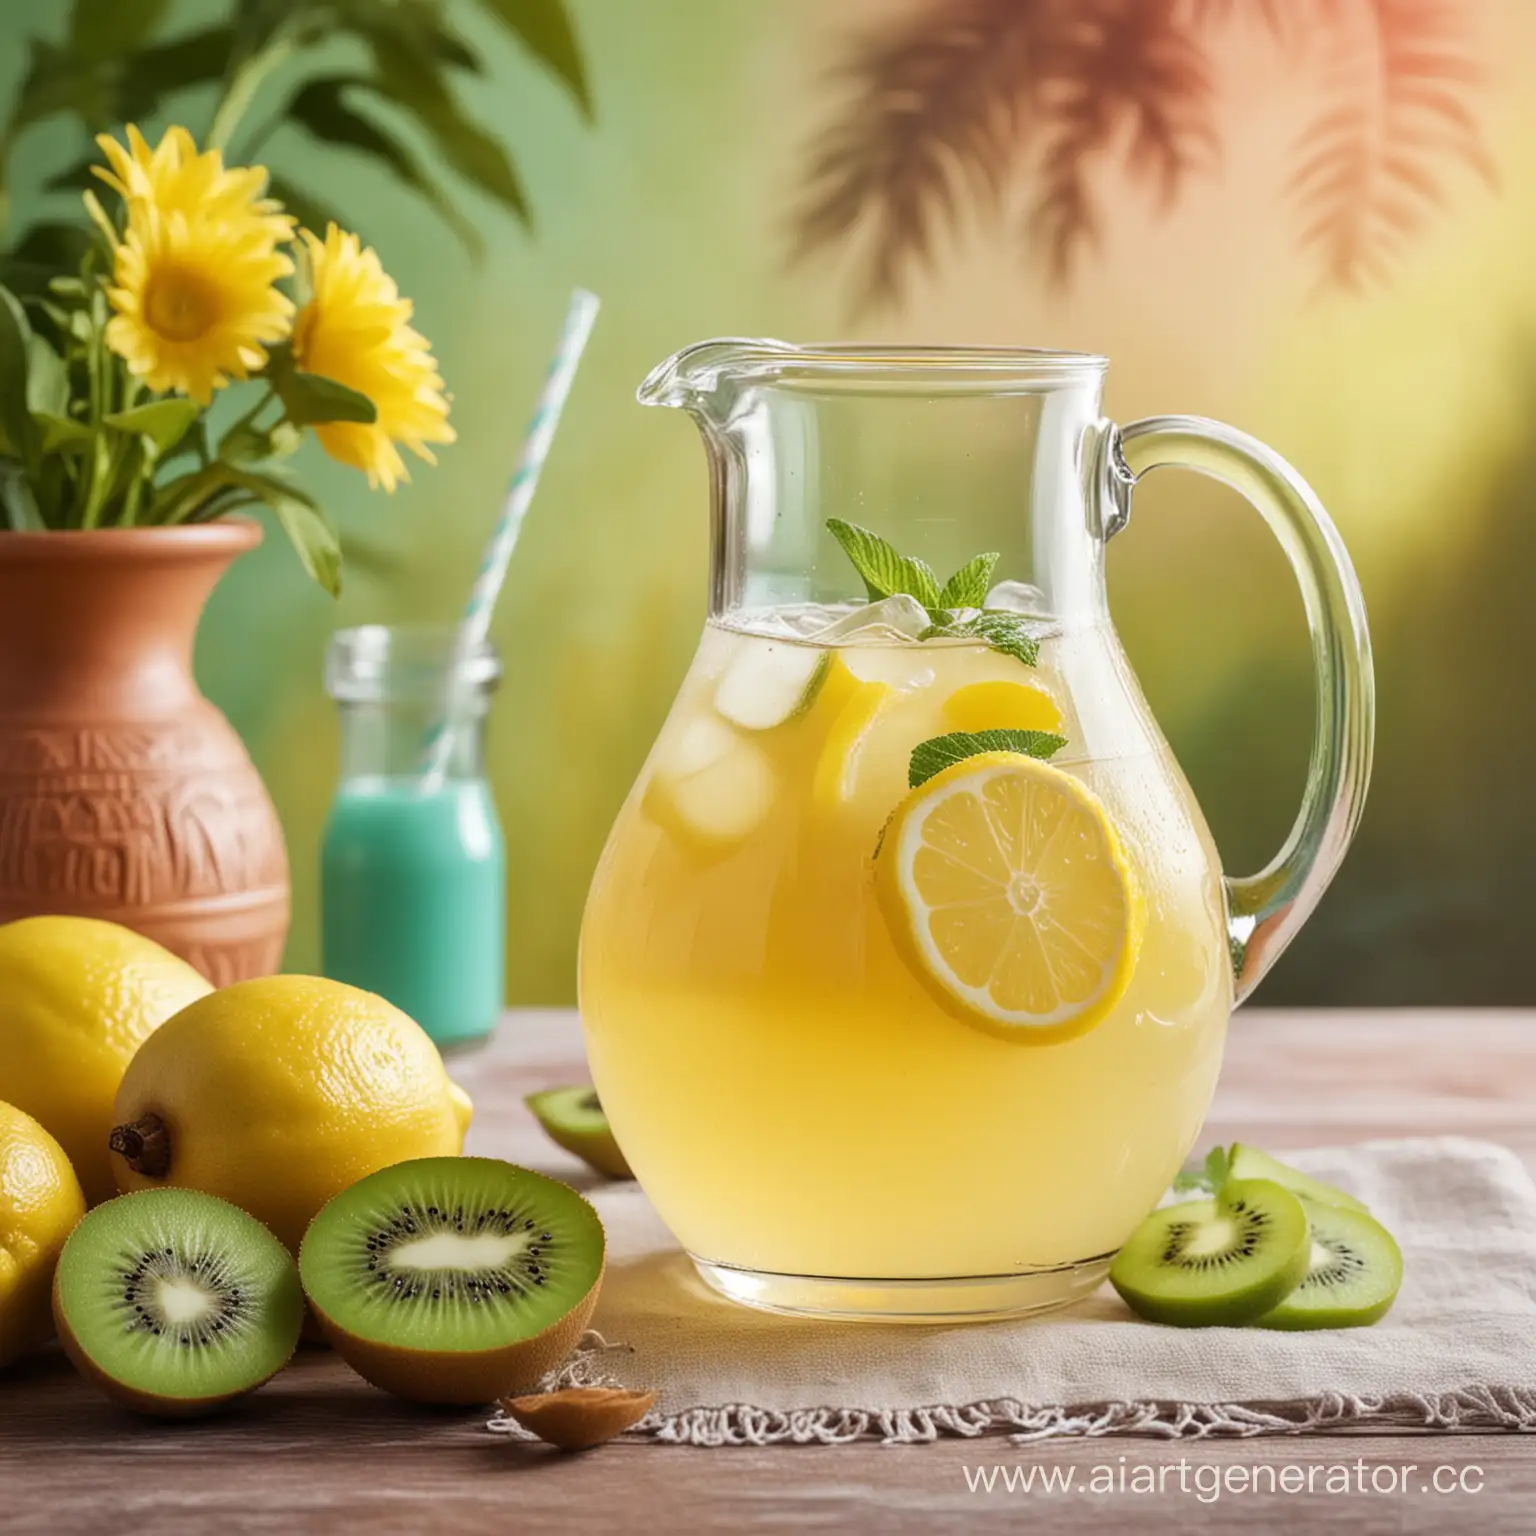 графин и стакан с лимонадом  на красивом фоне в красочных тонах.например с киви и мятой позади и лимоном